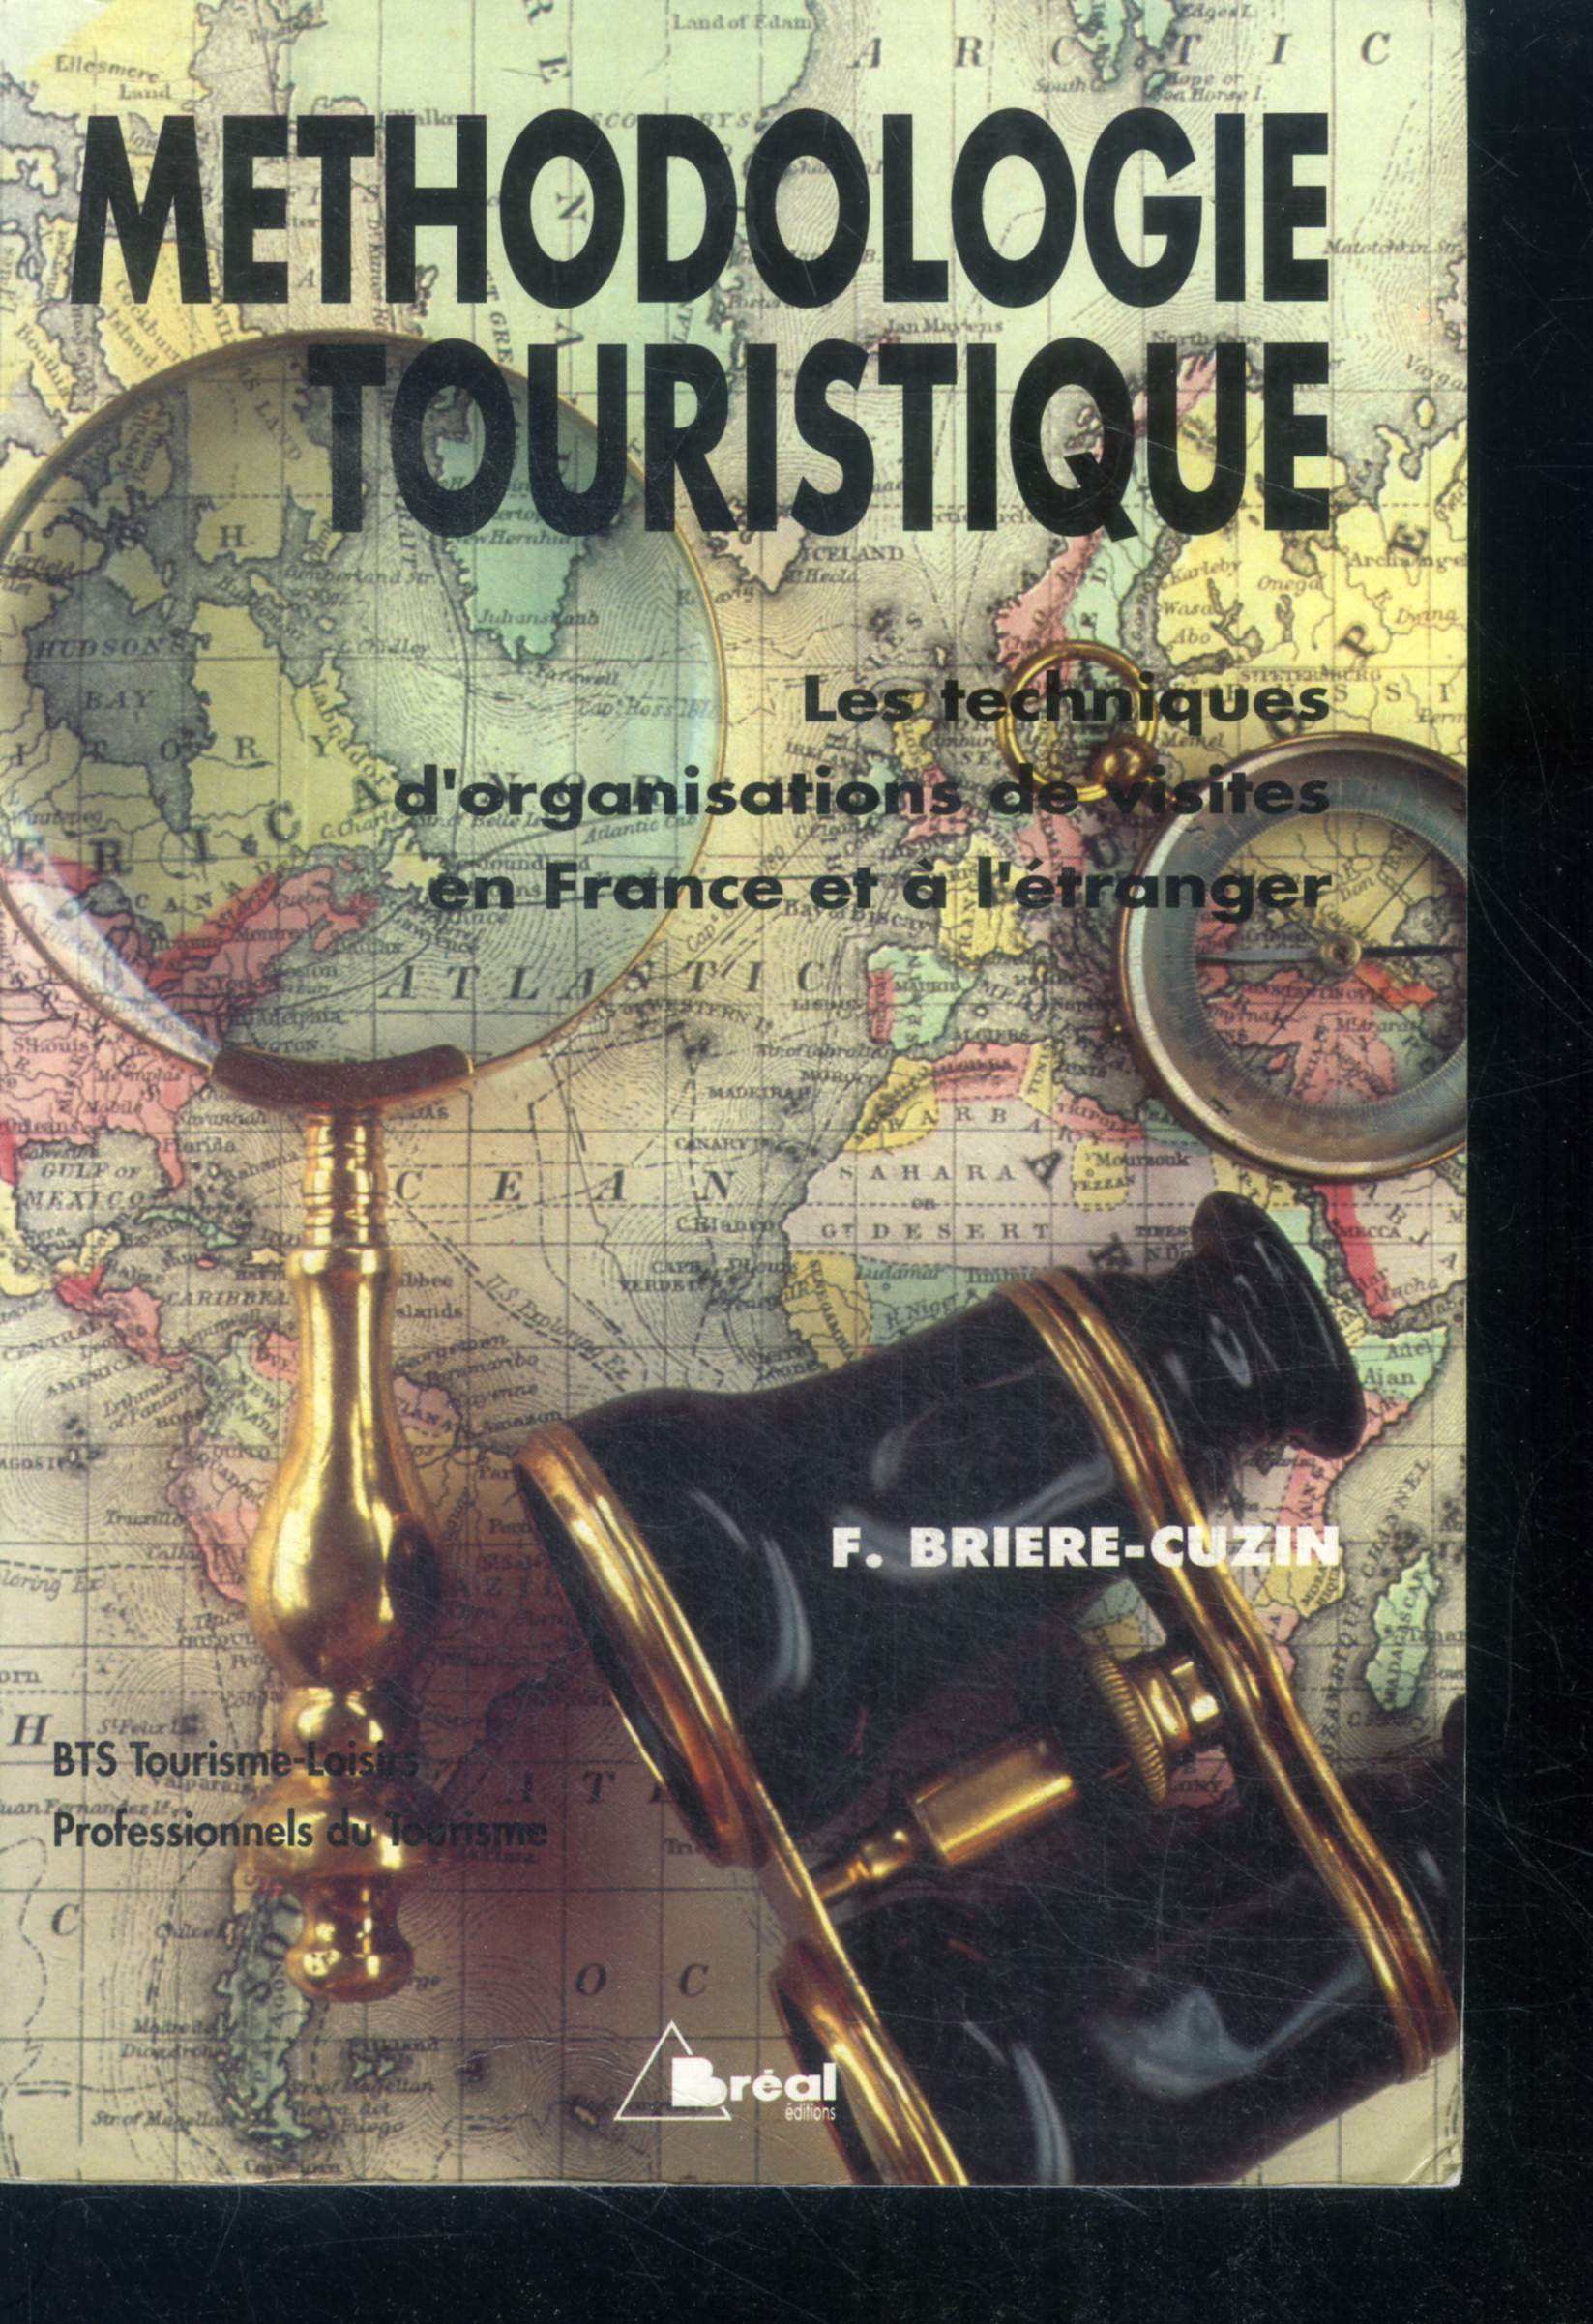 Methodologie touristique - les techniques d'organisations de visites en france et a l'etranger - BTS tourisme loisirs, formations aux metiers du tourisme